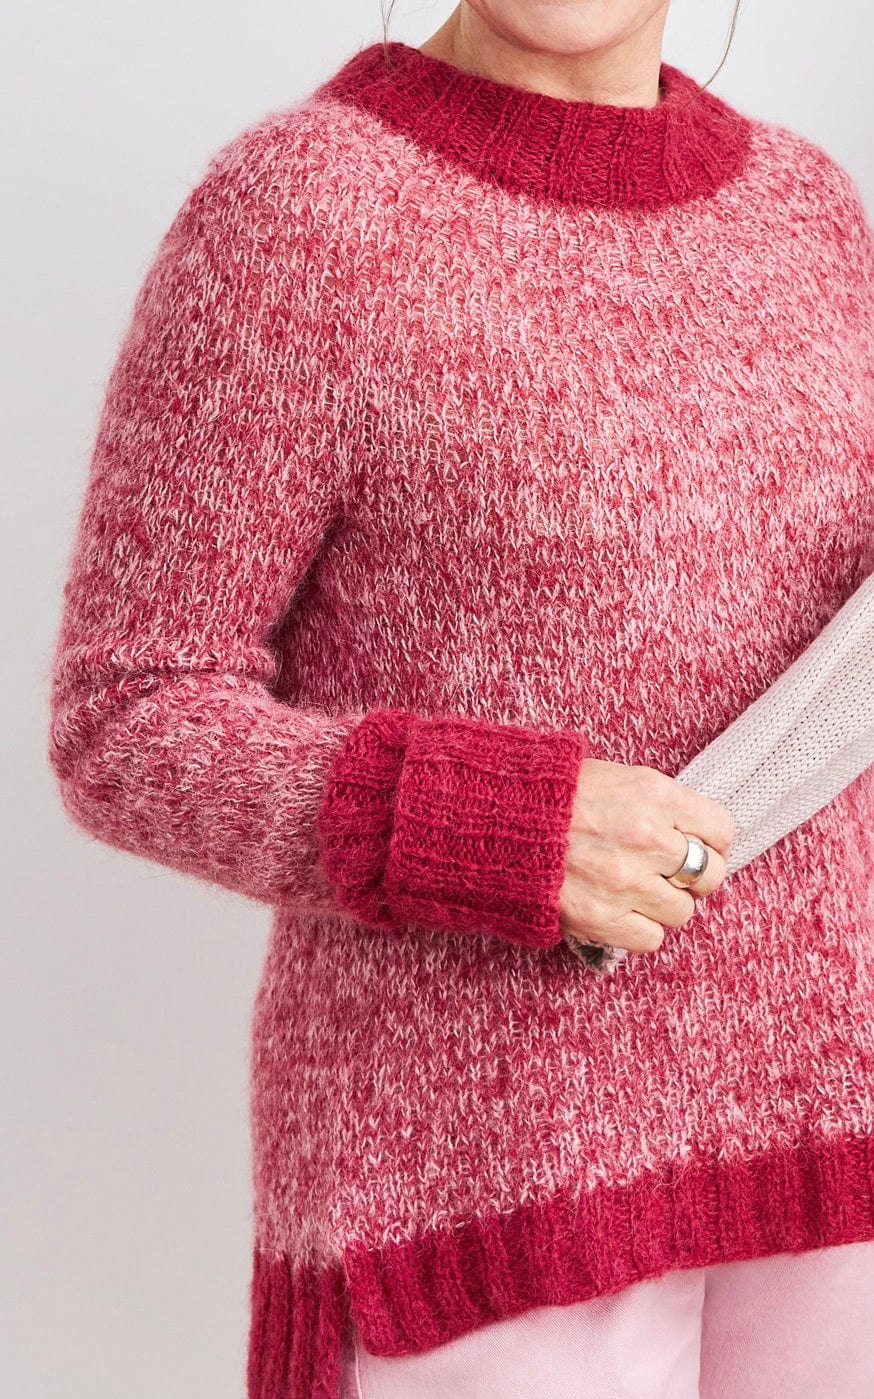 Mapala Sweater Mohair Edition - SETASURI ZWEIFÄDIG - Strickset von ROSA P. jetzt online kaufen bei OONIQUE